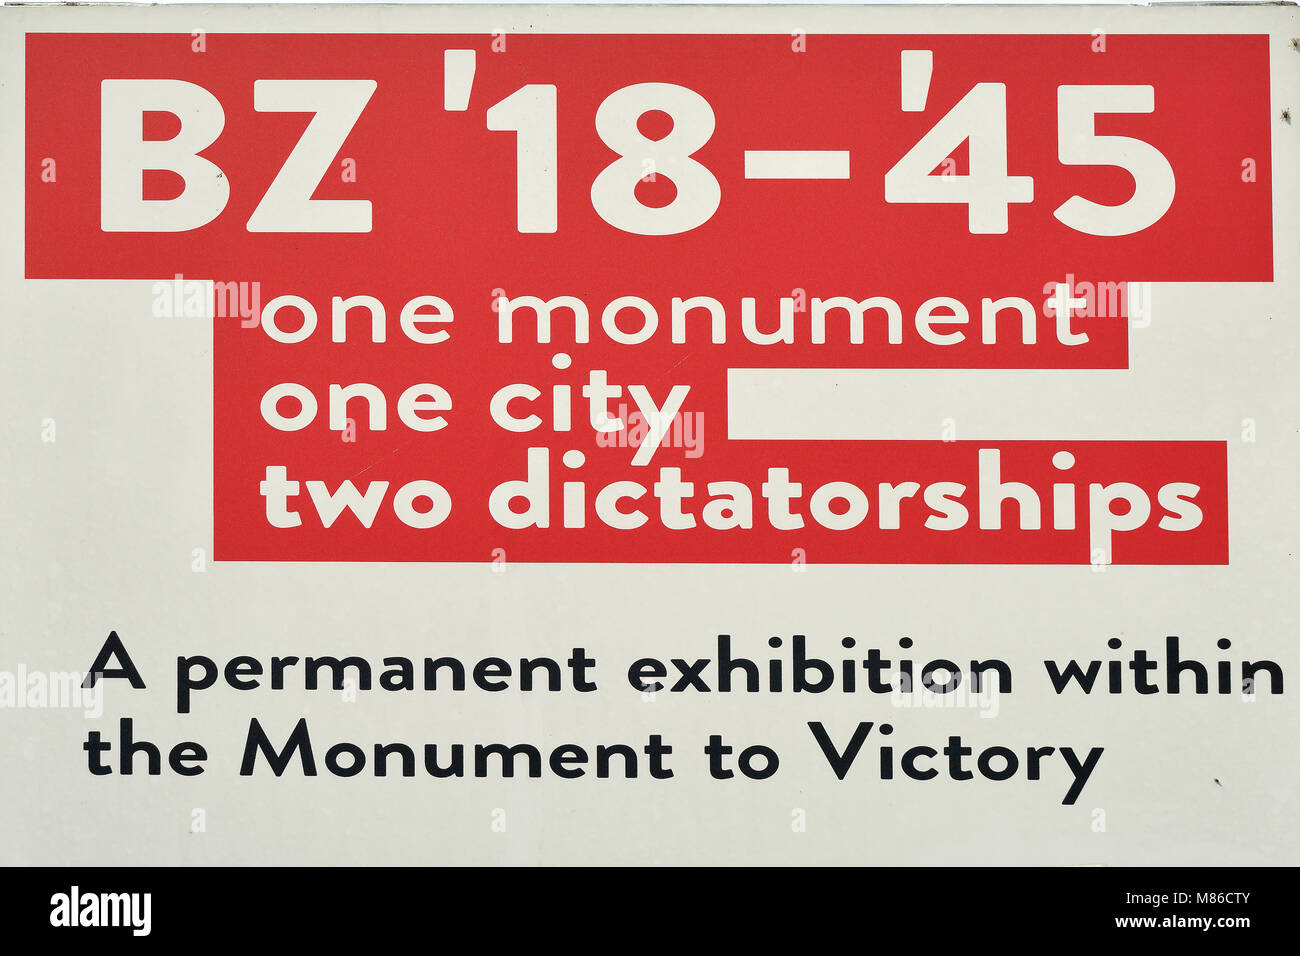 Information Board auf der Victory Monument auf dem Platz des Sieges in Bozen - Italien. Stockfoto